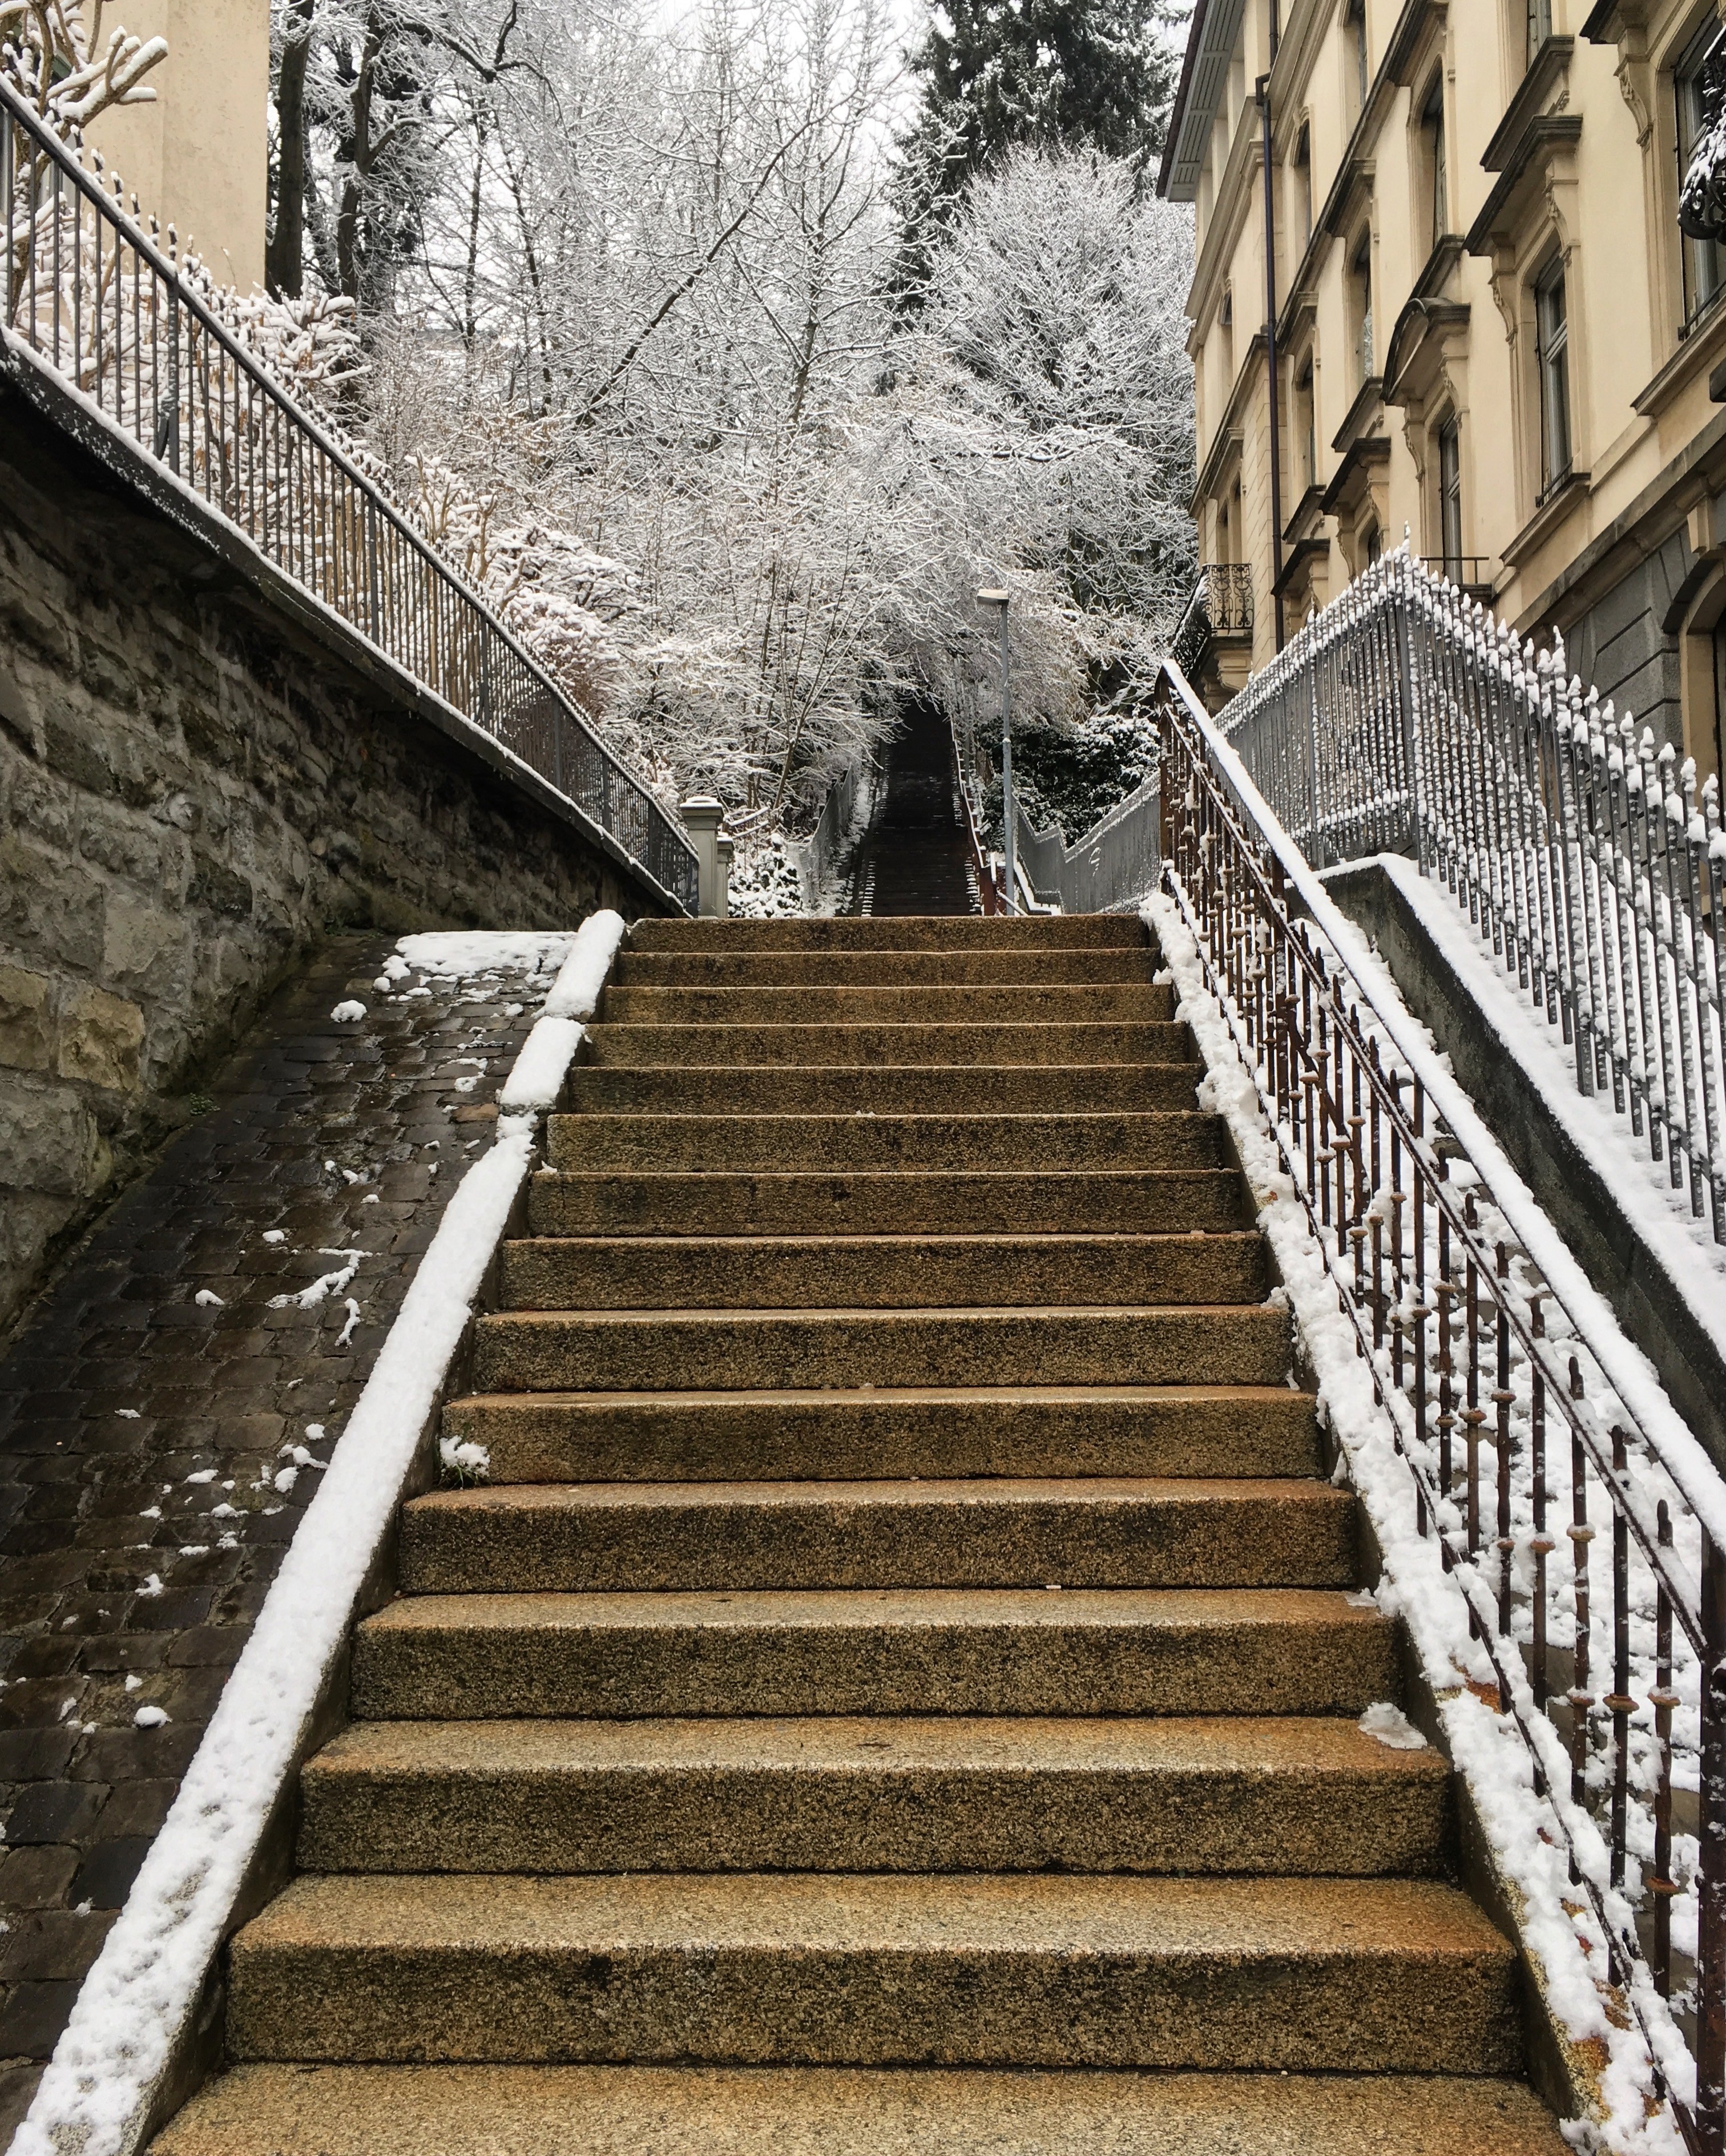 A winter staircase, St. Gallen, Switzerland